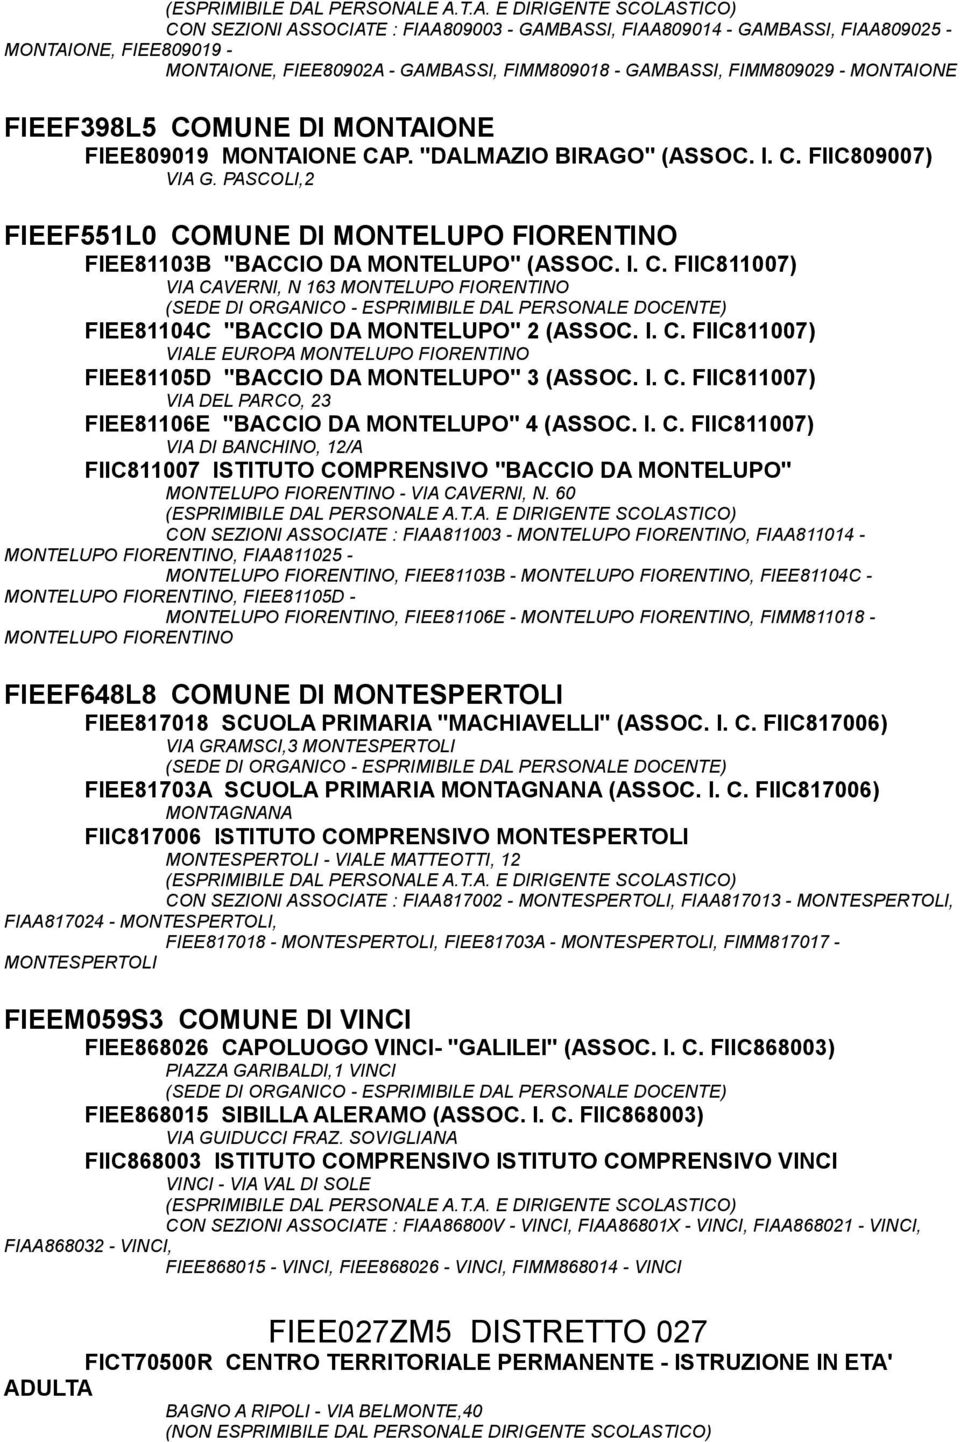 I. C. FIIC811007) VIALE EUROPA MONTELUPO FIORENTINO FIEE81105D "BACCIO DA MONTELUPO" 3 (ASSOC. I. C. FIIC811007) VIA DEL PARCO, 23 FIEE81106E "BACCIO DA MONTELUPO" 4 (ASSOC. I. C. FIIC811007) VIA DI BANCHINO, 12/A FIIC811007 ISTITUTO COMPRENSIVO "BACCIO DA MONTELUPO" MONTELUPO FIORENTINO - VIA CAVERNI, N.